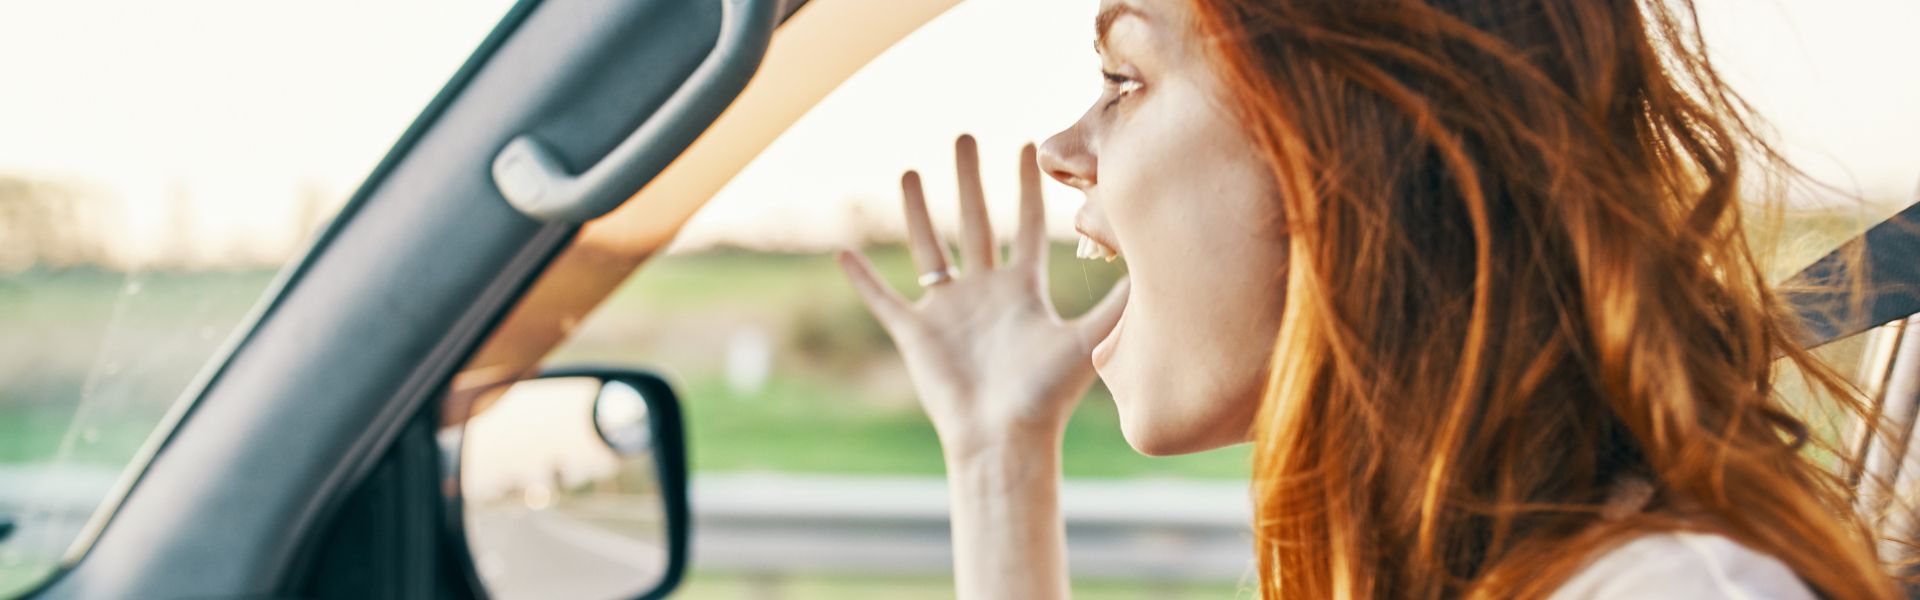 Jak emocje i stres wpływają na decyzje za kierownicą?